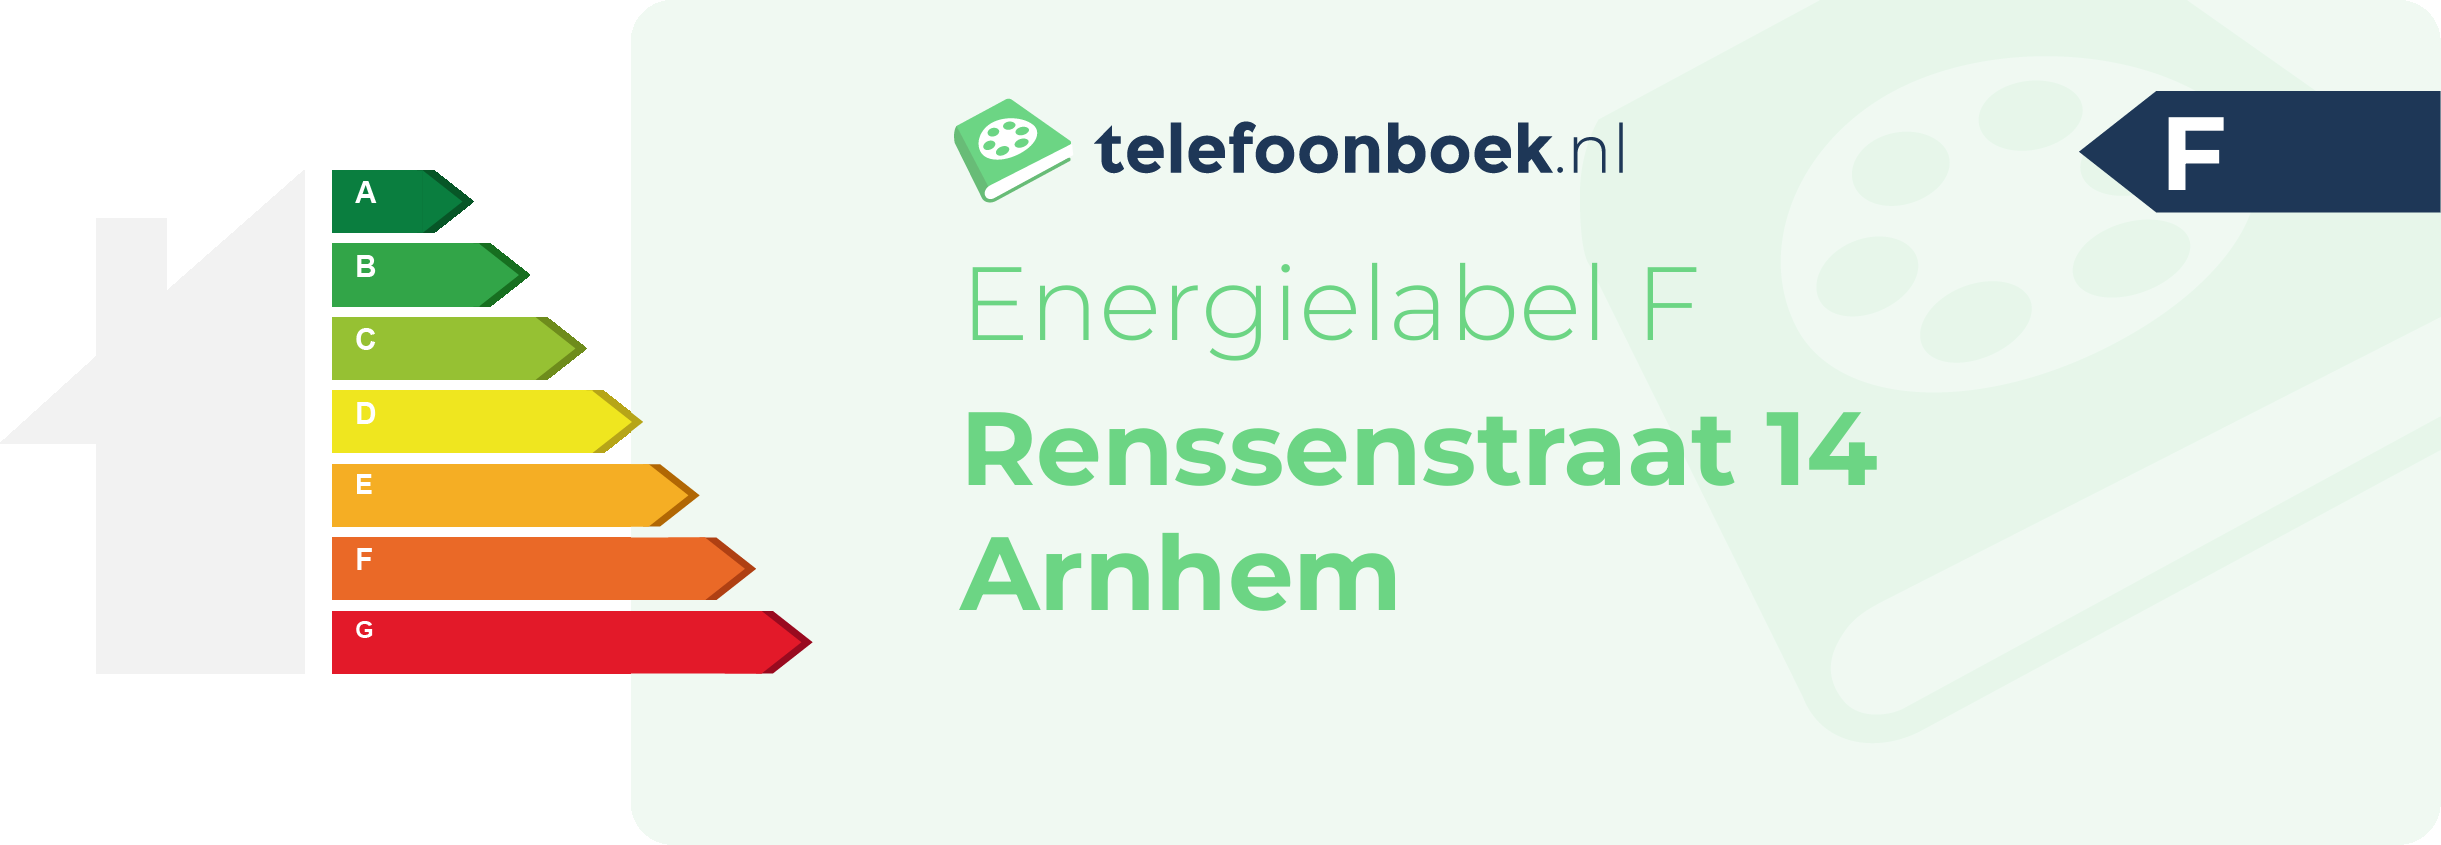 Energielabel Renssenstraat 14 Arnhem